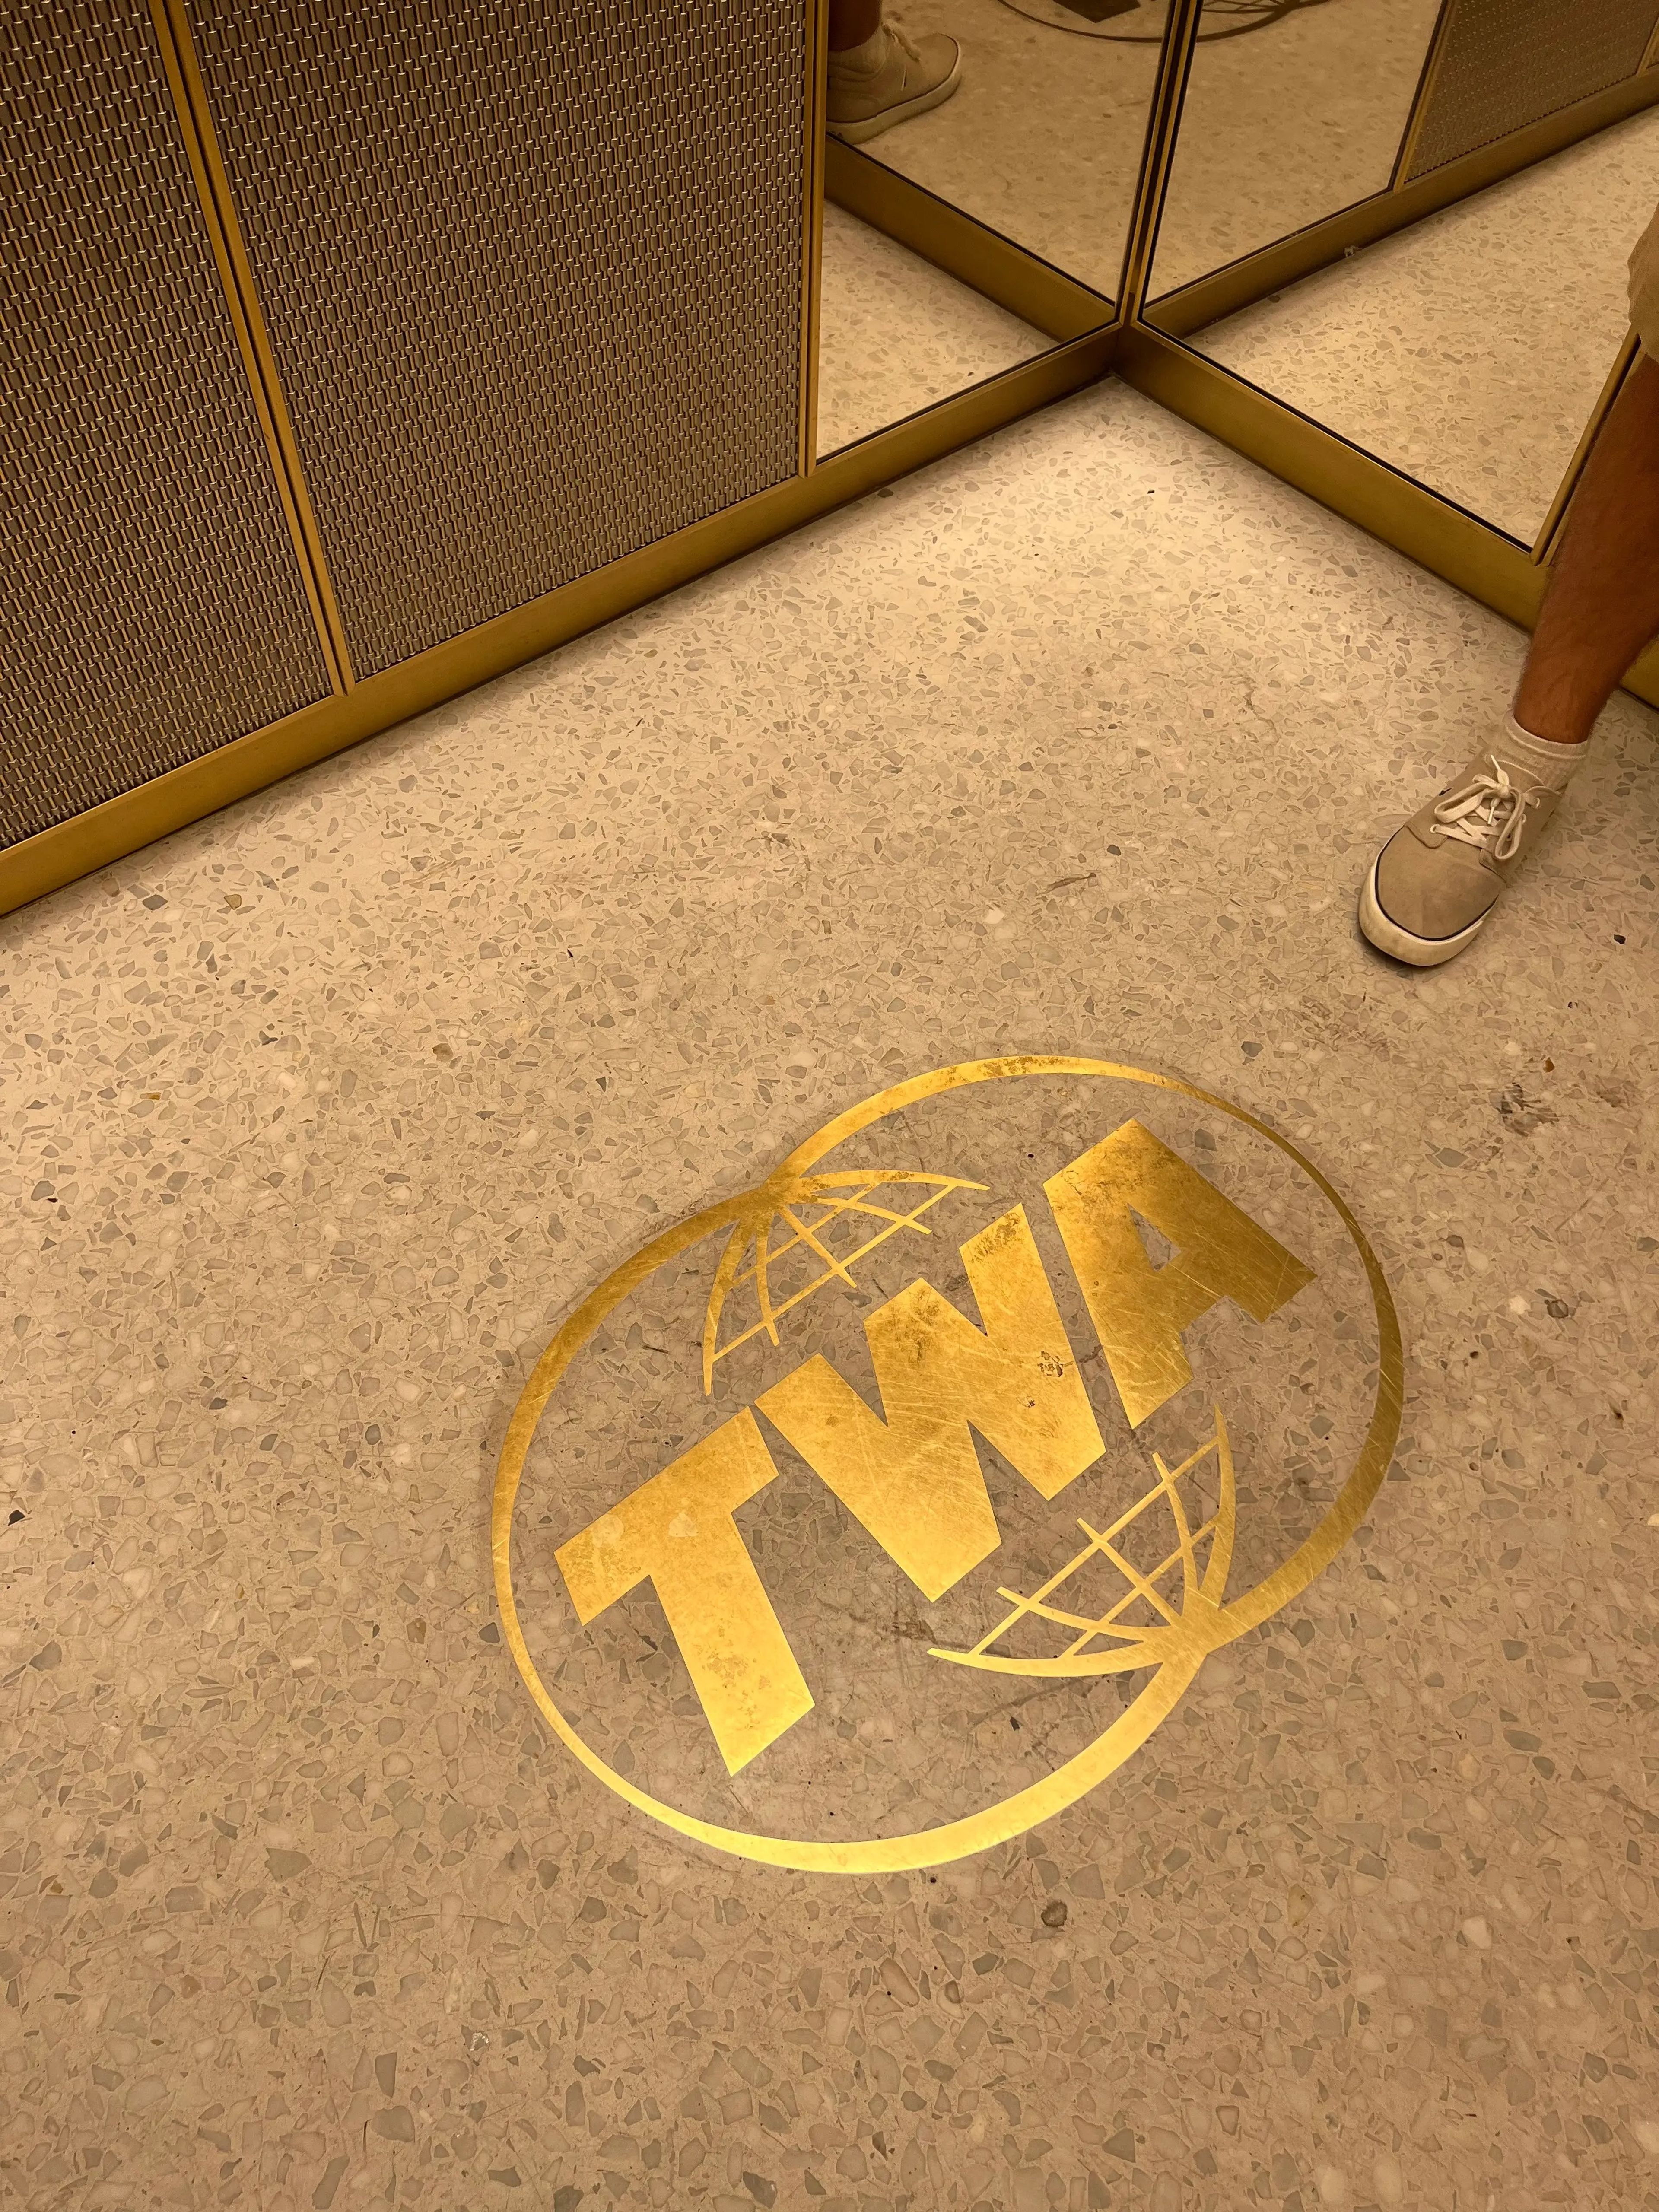 TWA HOTEL elevator floor